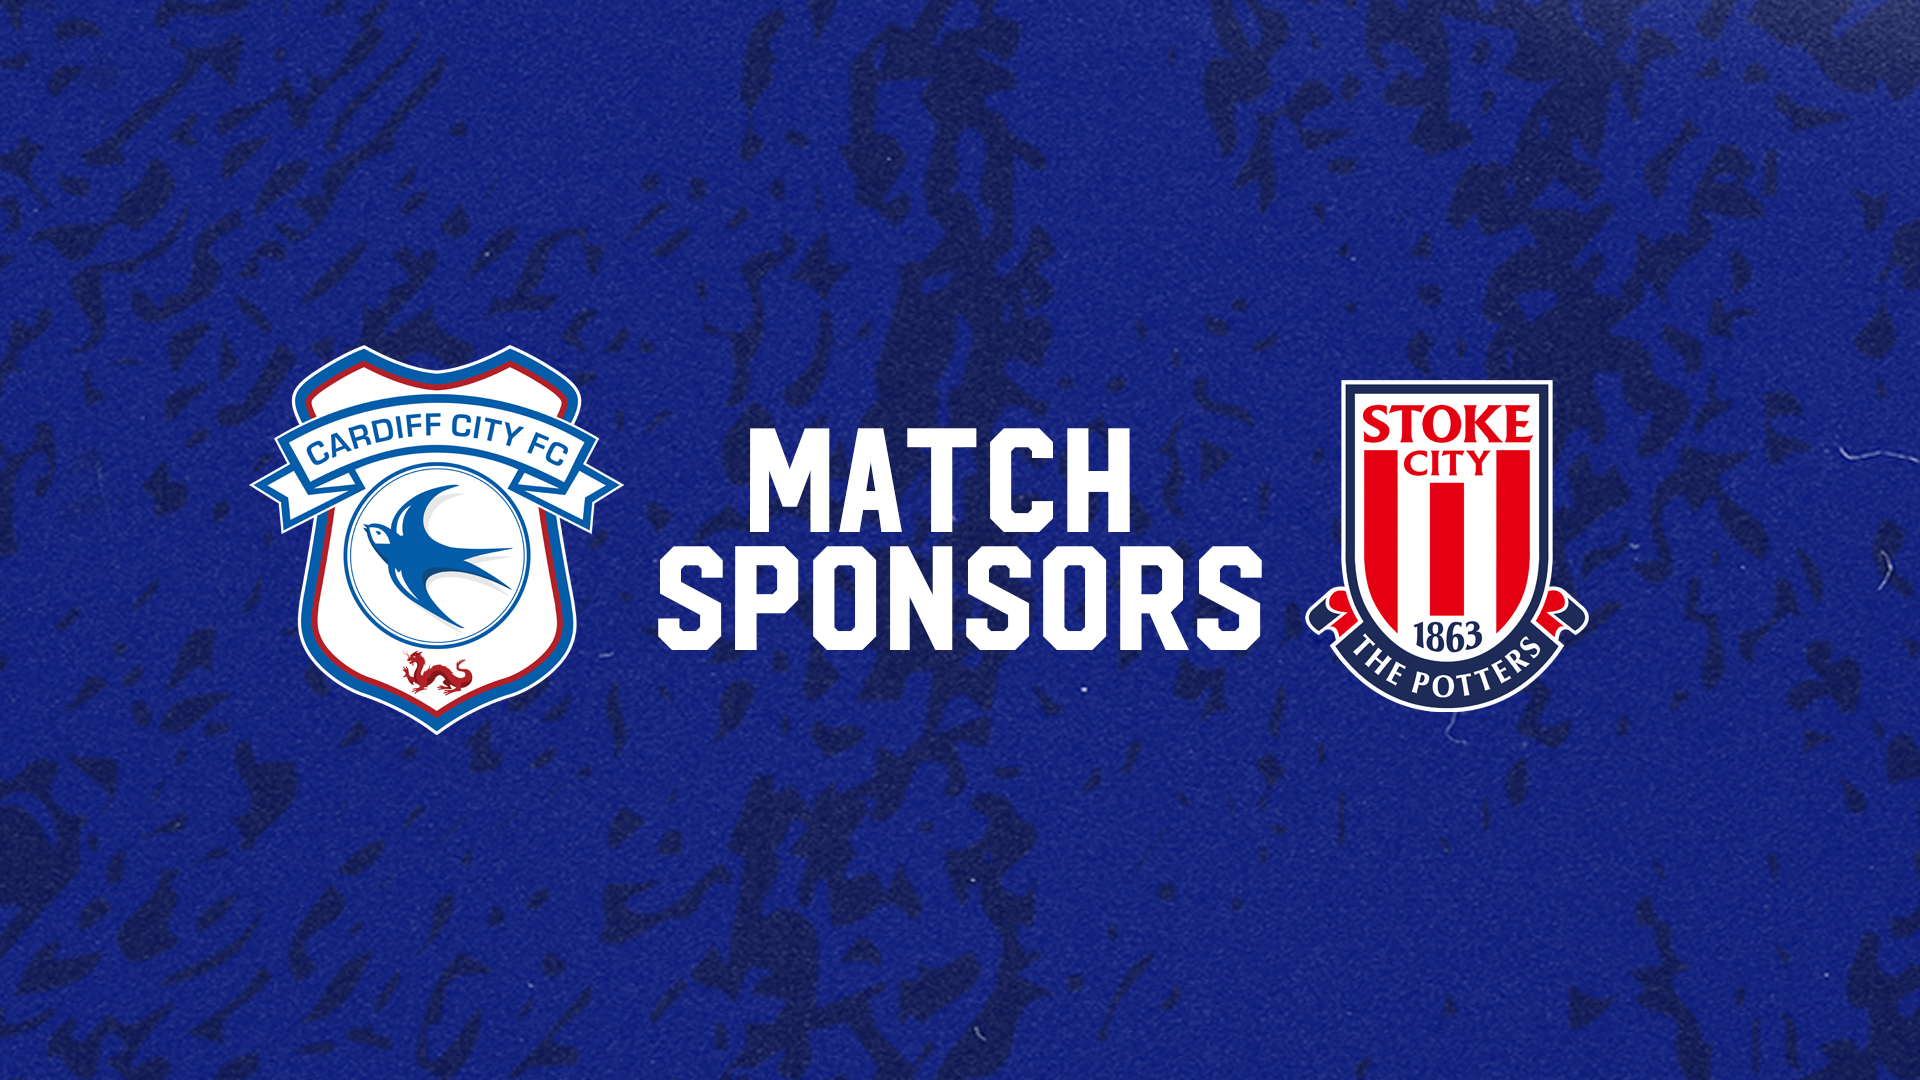 Stoke City sponsors